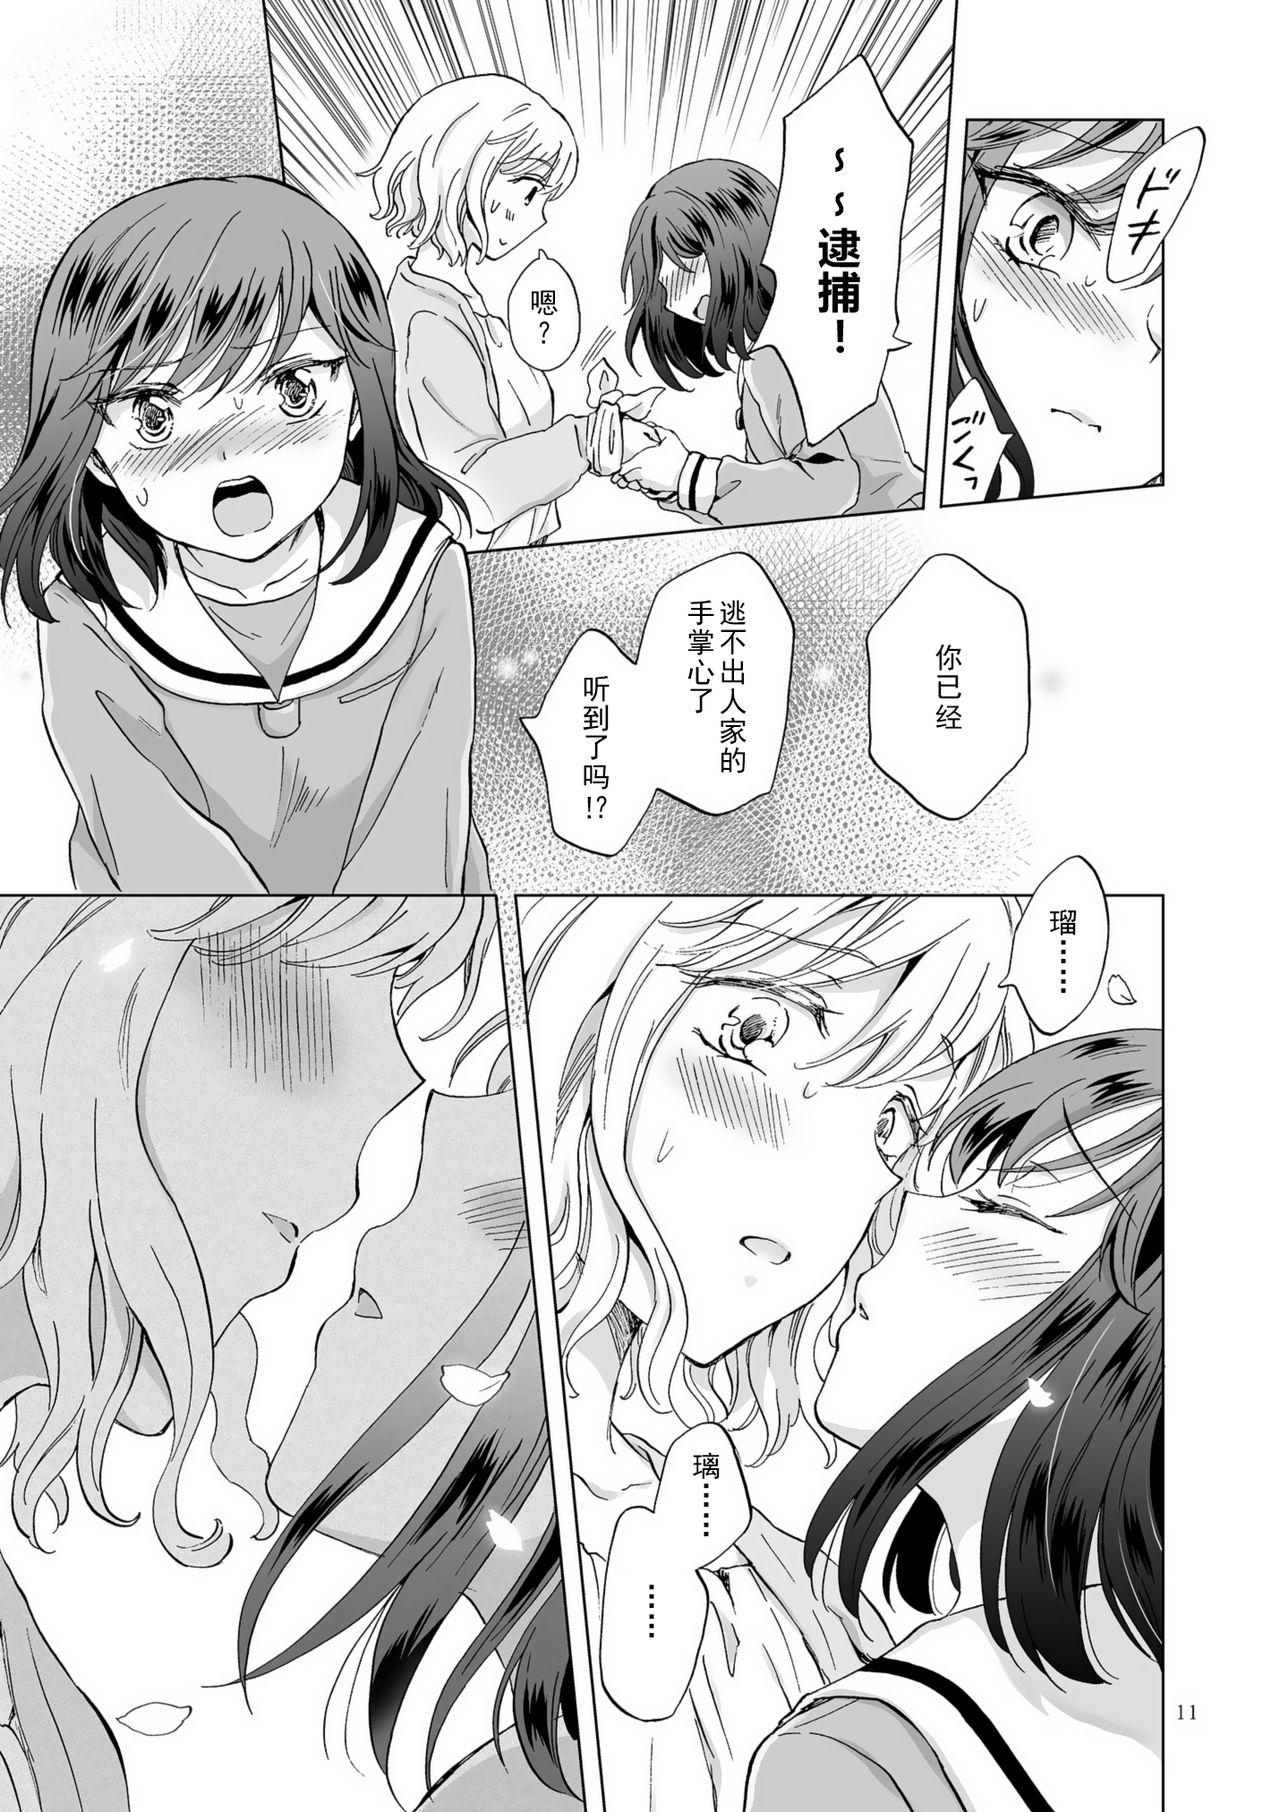 Soft Kinbaku Date - Original Female - Page 11